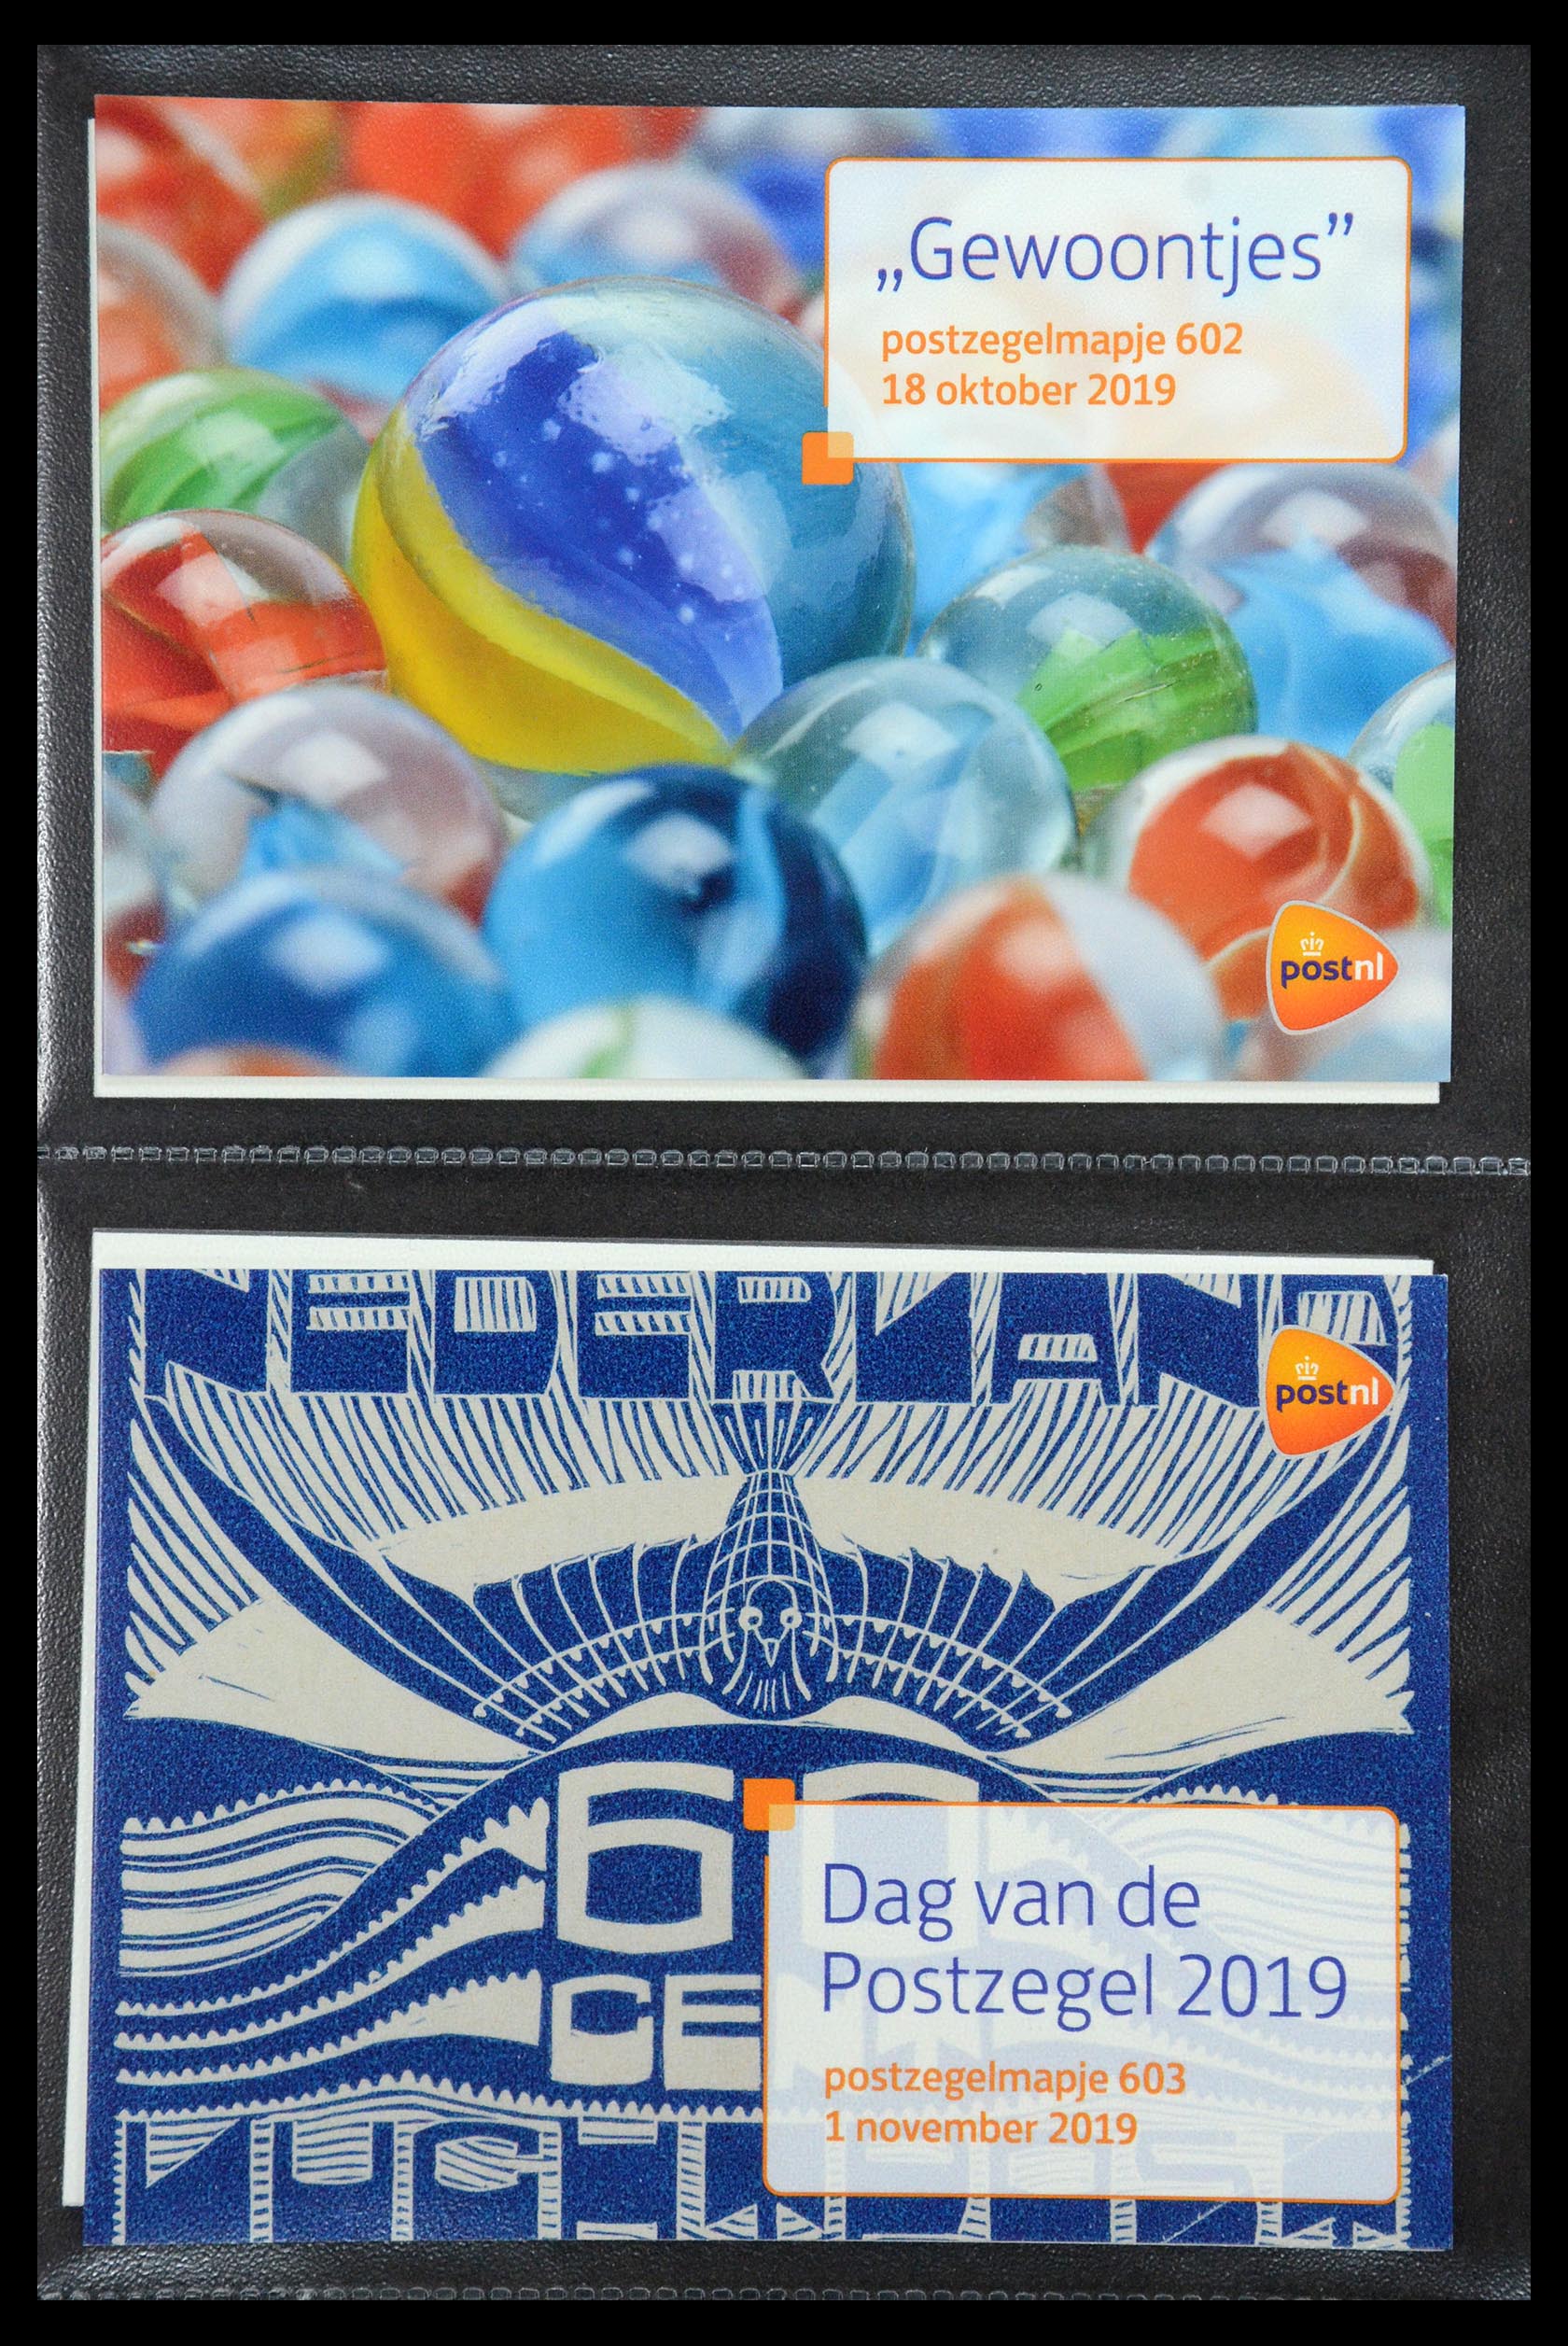 35187 364 - Stamp Collection 35187 Netherlands PTT presentation packs 1982-2019!